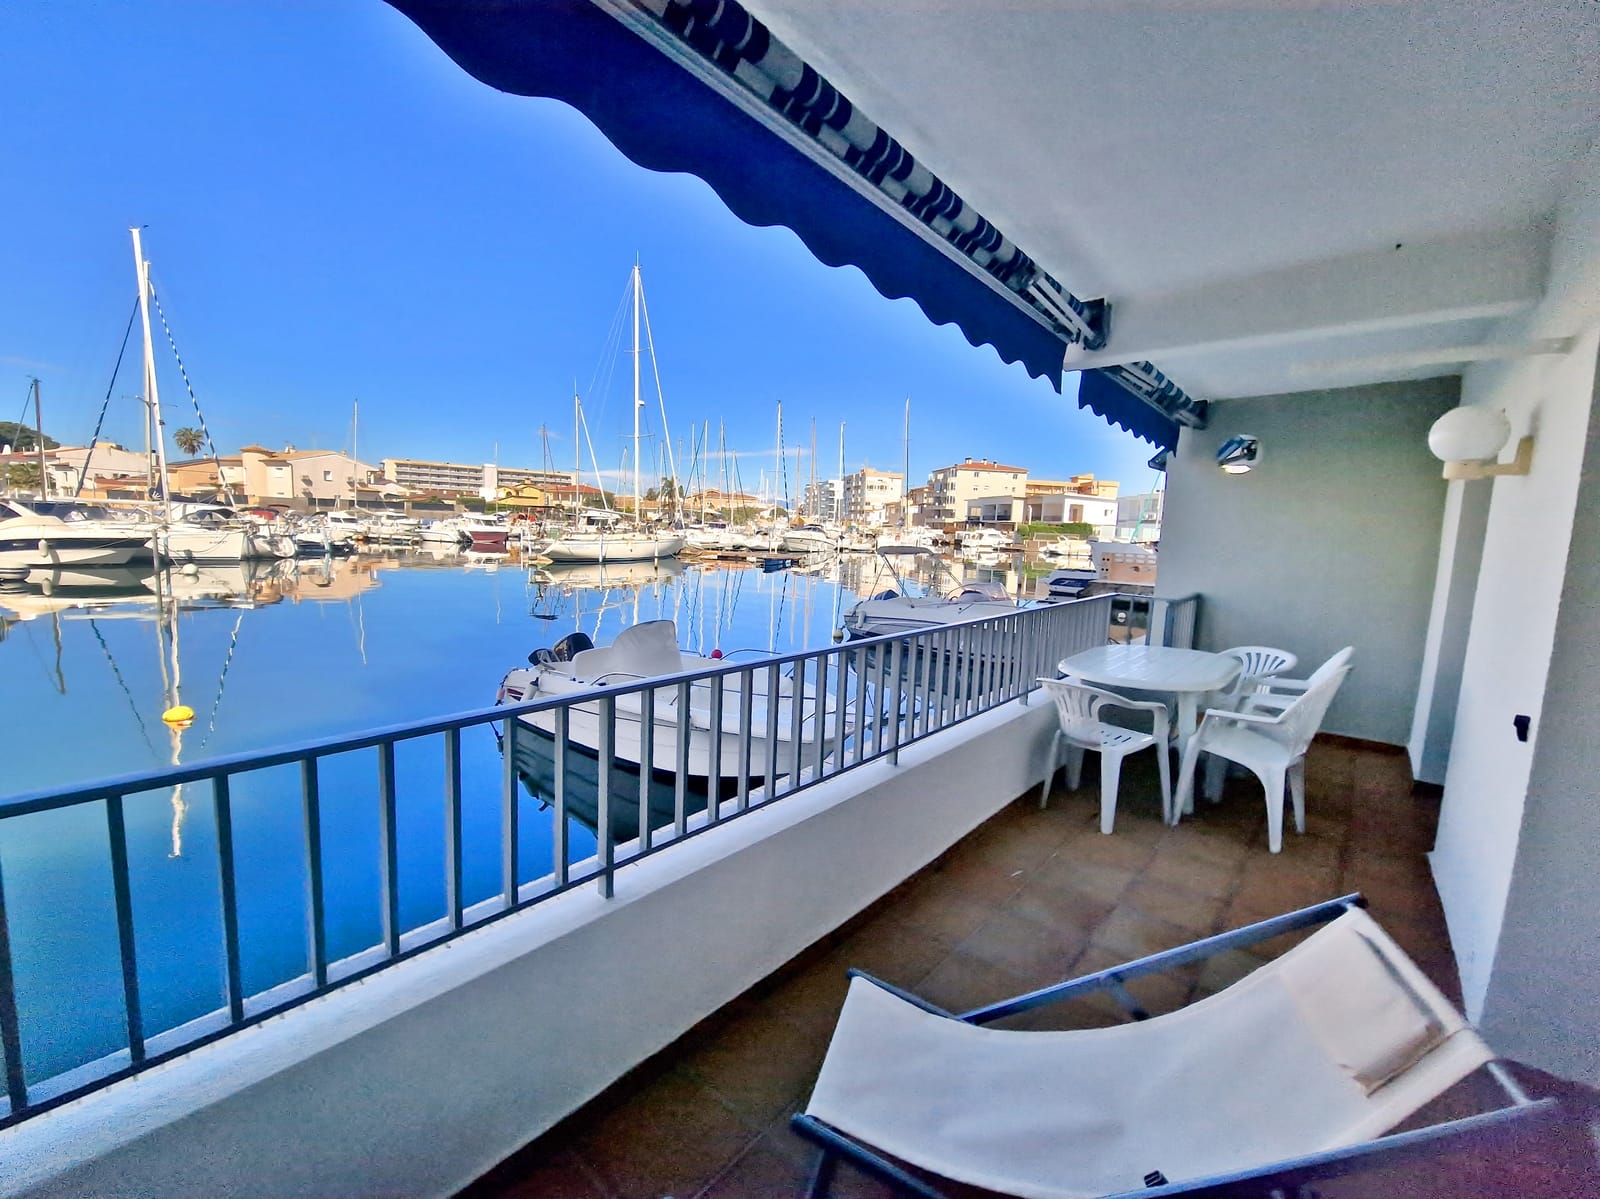 Exclusividad Roses - Apartamento vista puerto deportivo, parking compartido + amarre , playa 500m